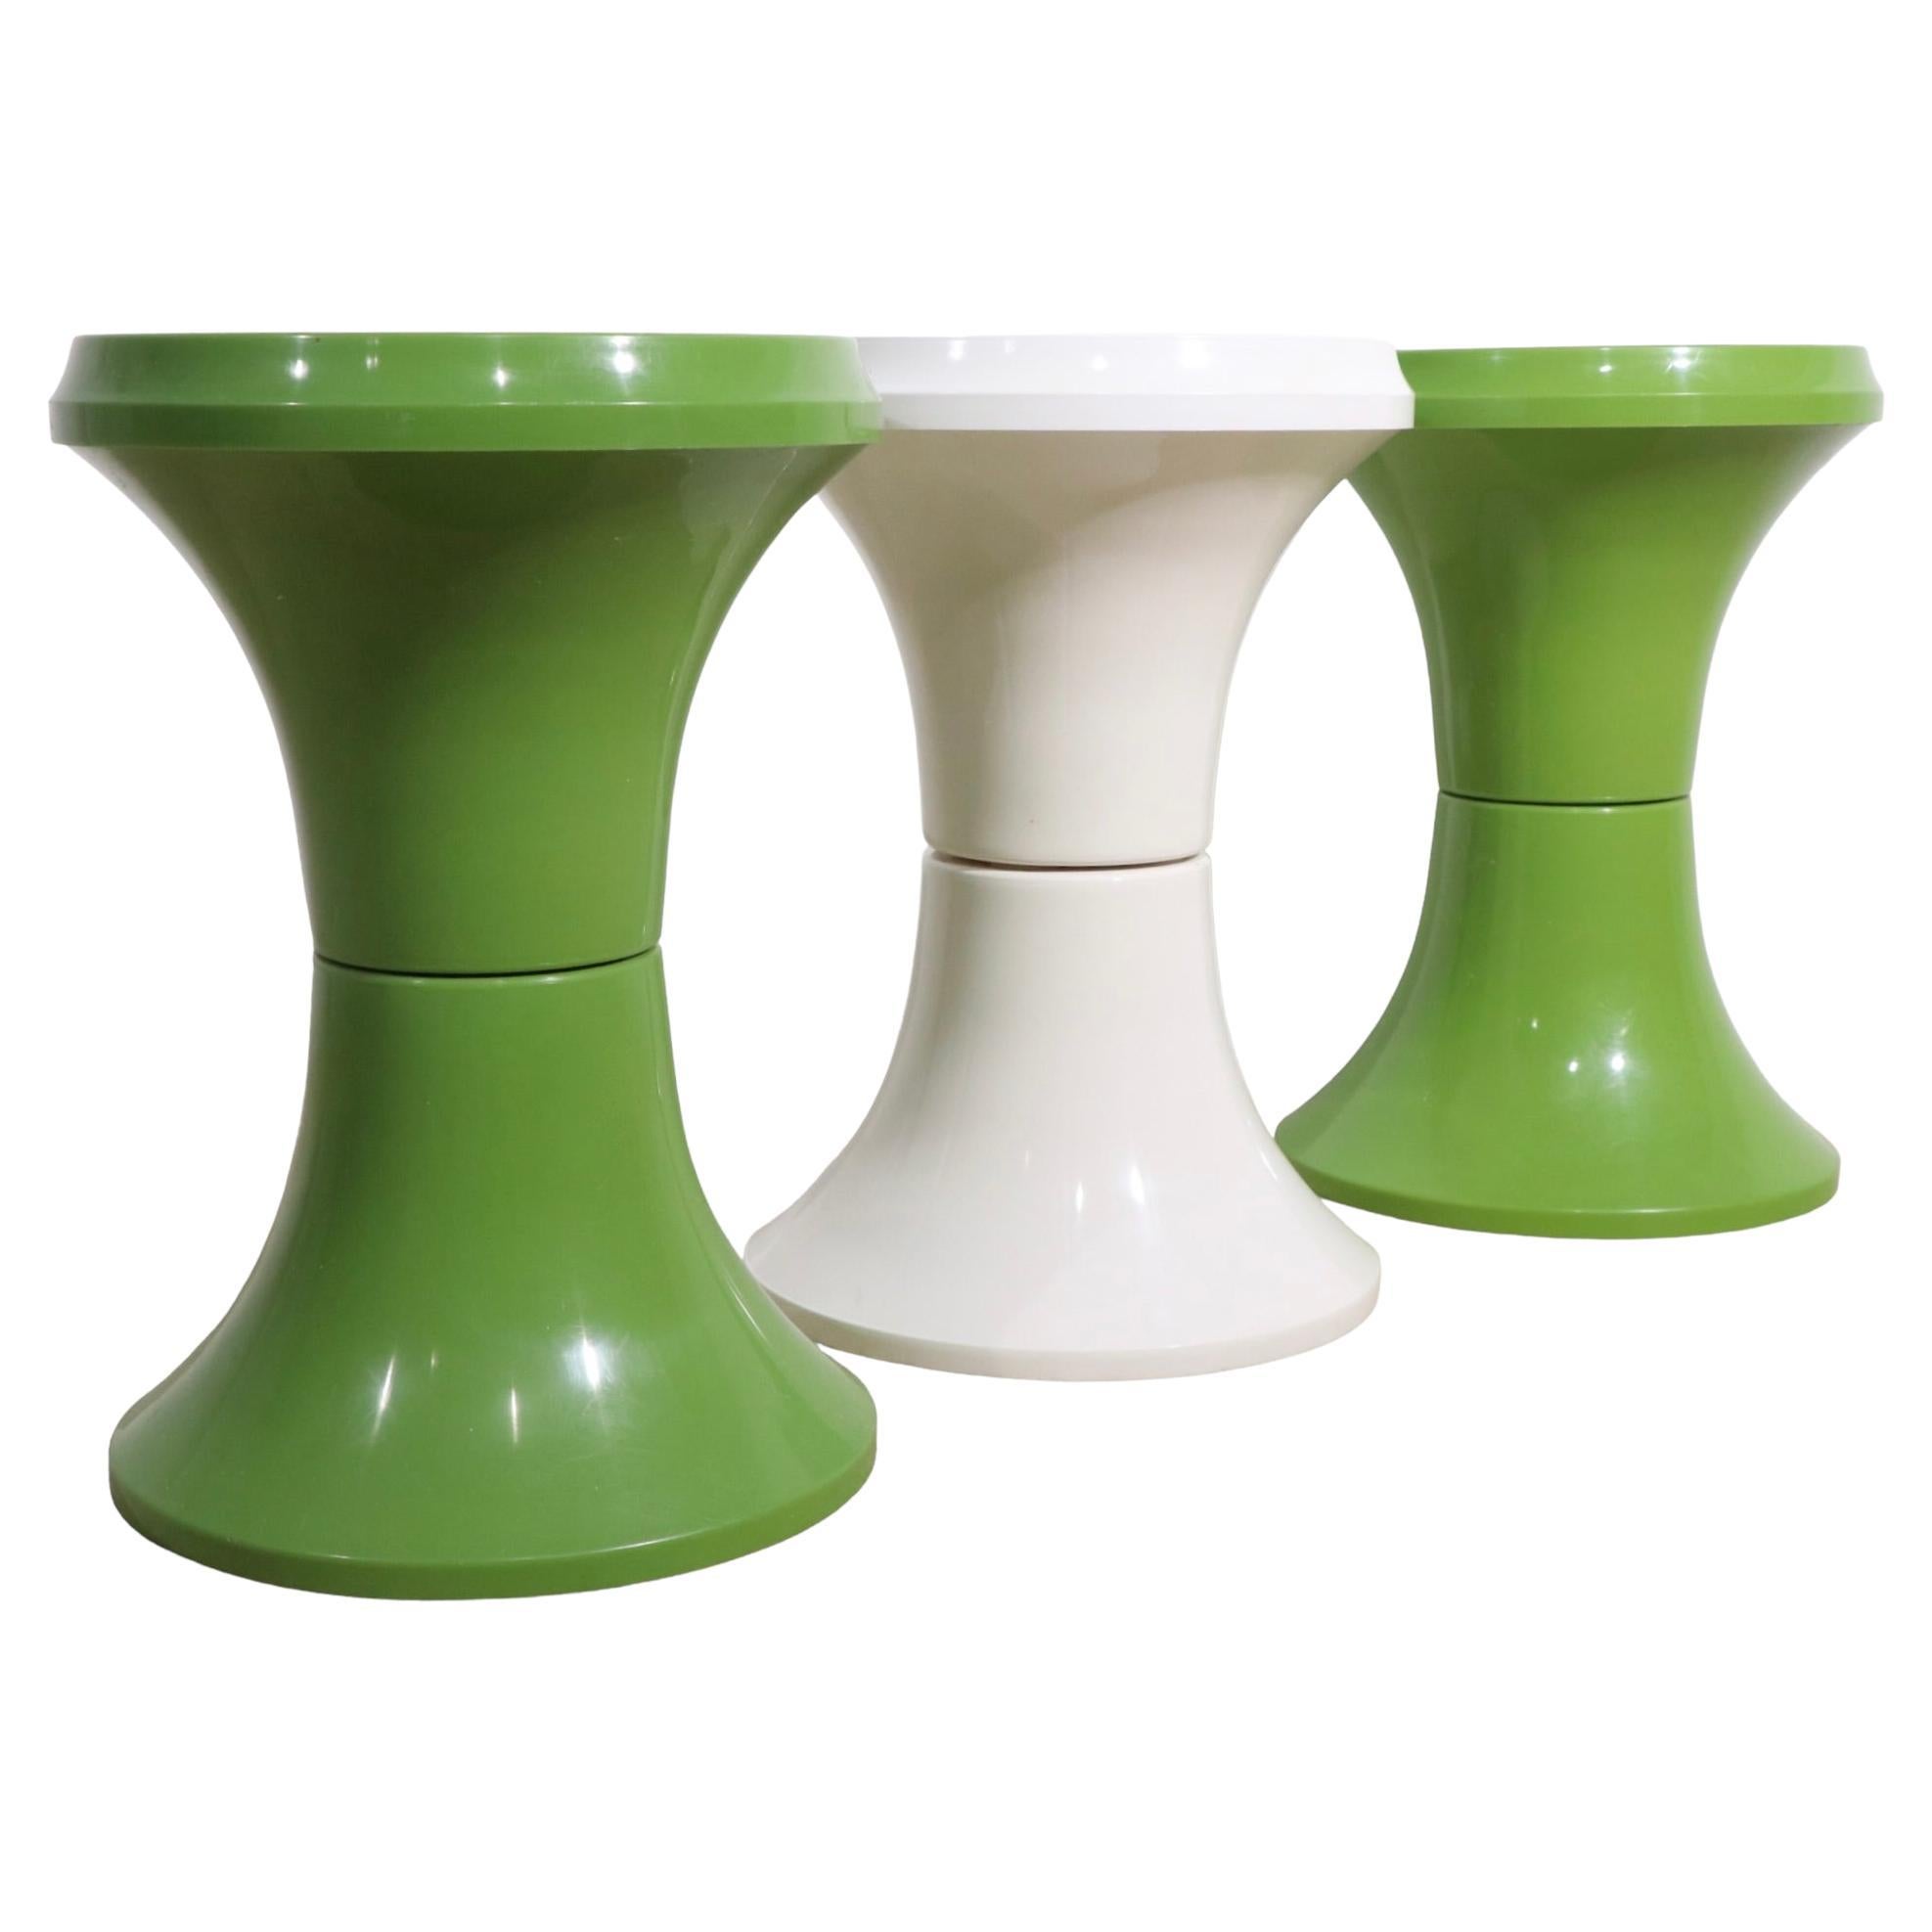 Set of Three 1970's Plastic Stools, Pedestals, Tables